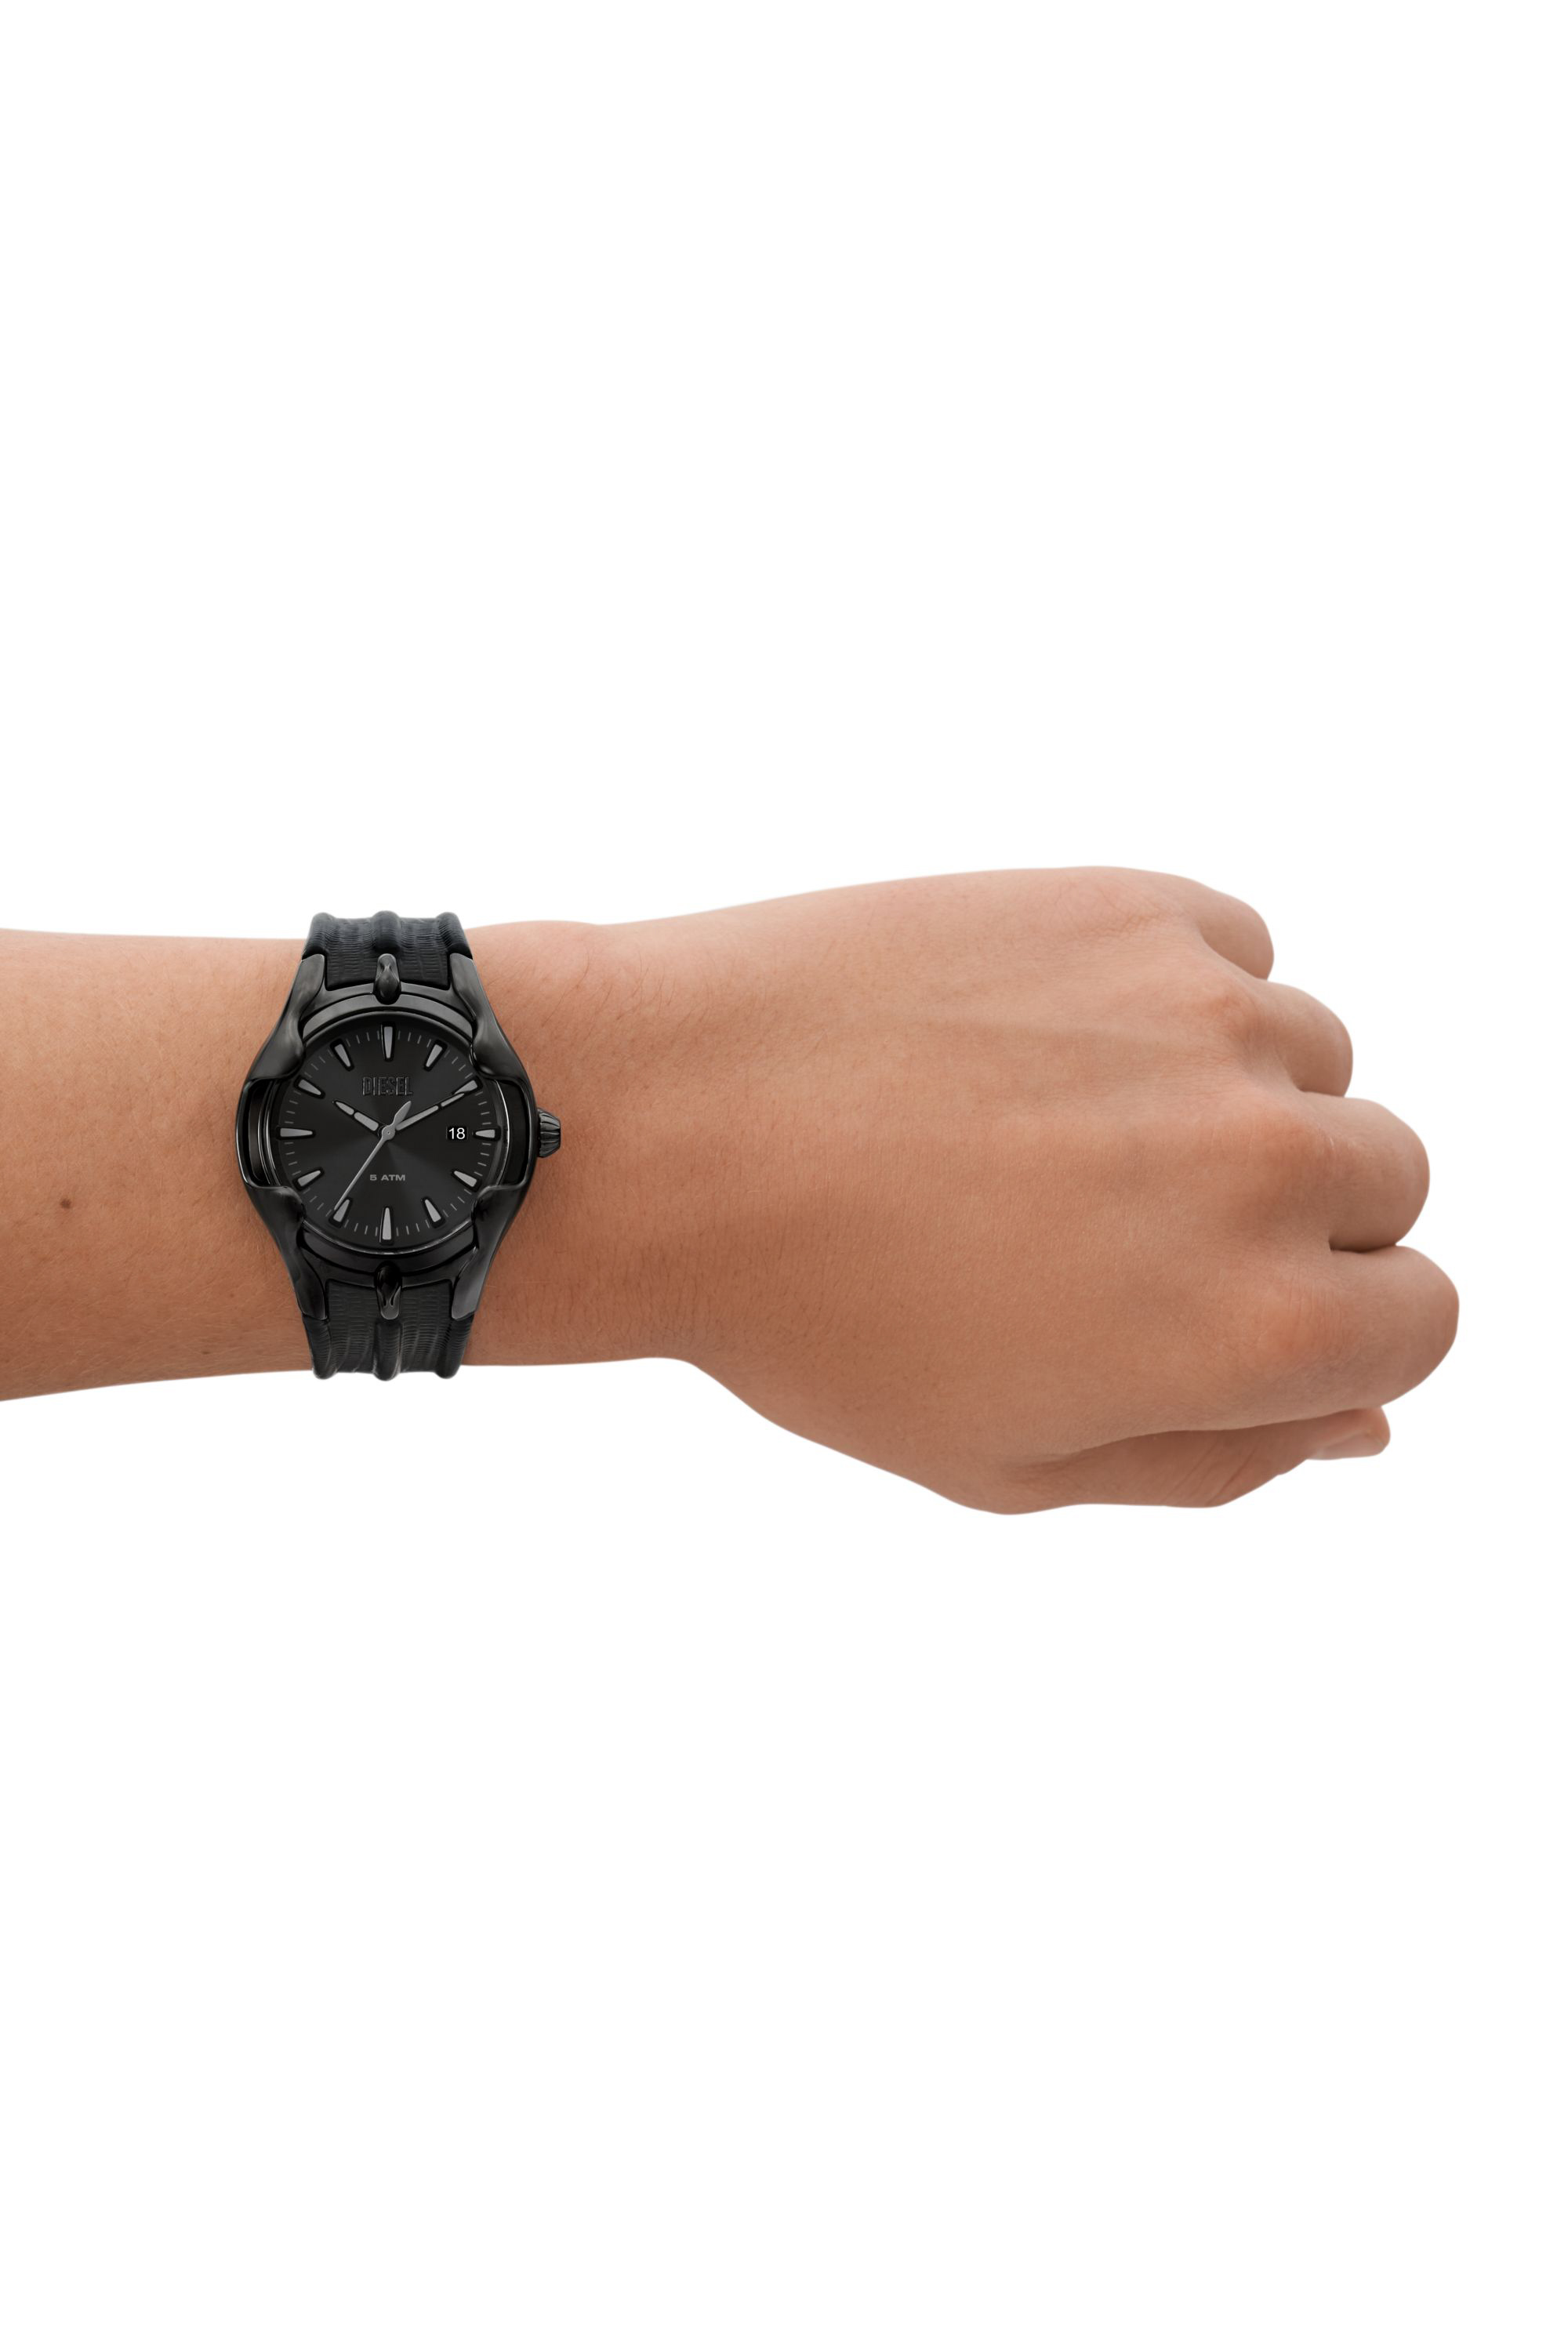 Men's wristwatches: digital, analog, smartwatches | Diesel® Thailand